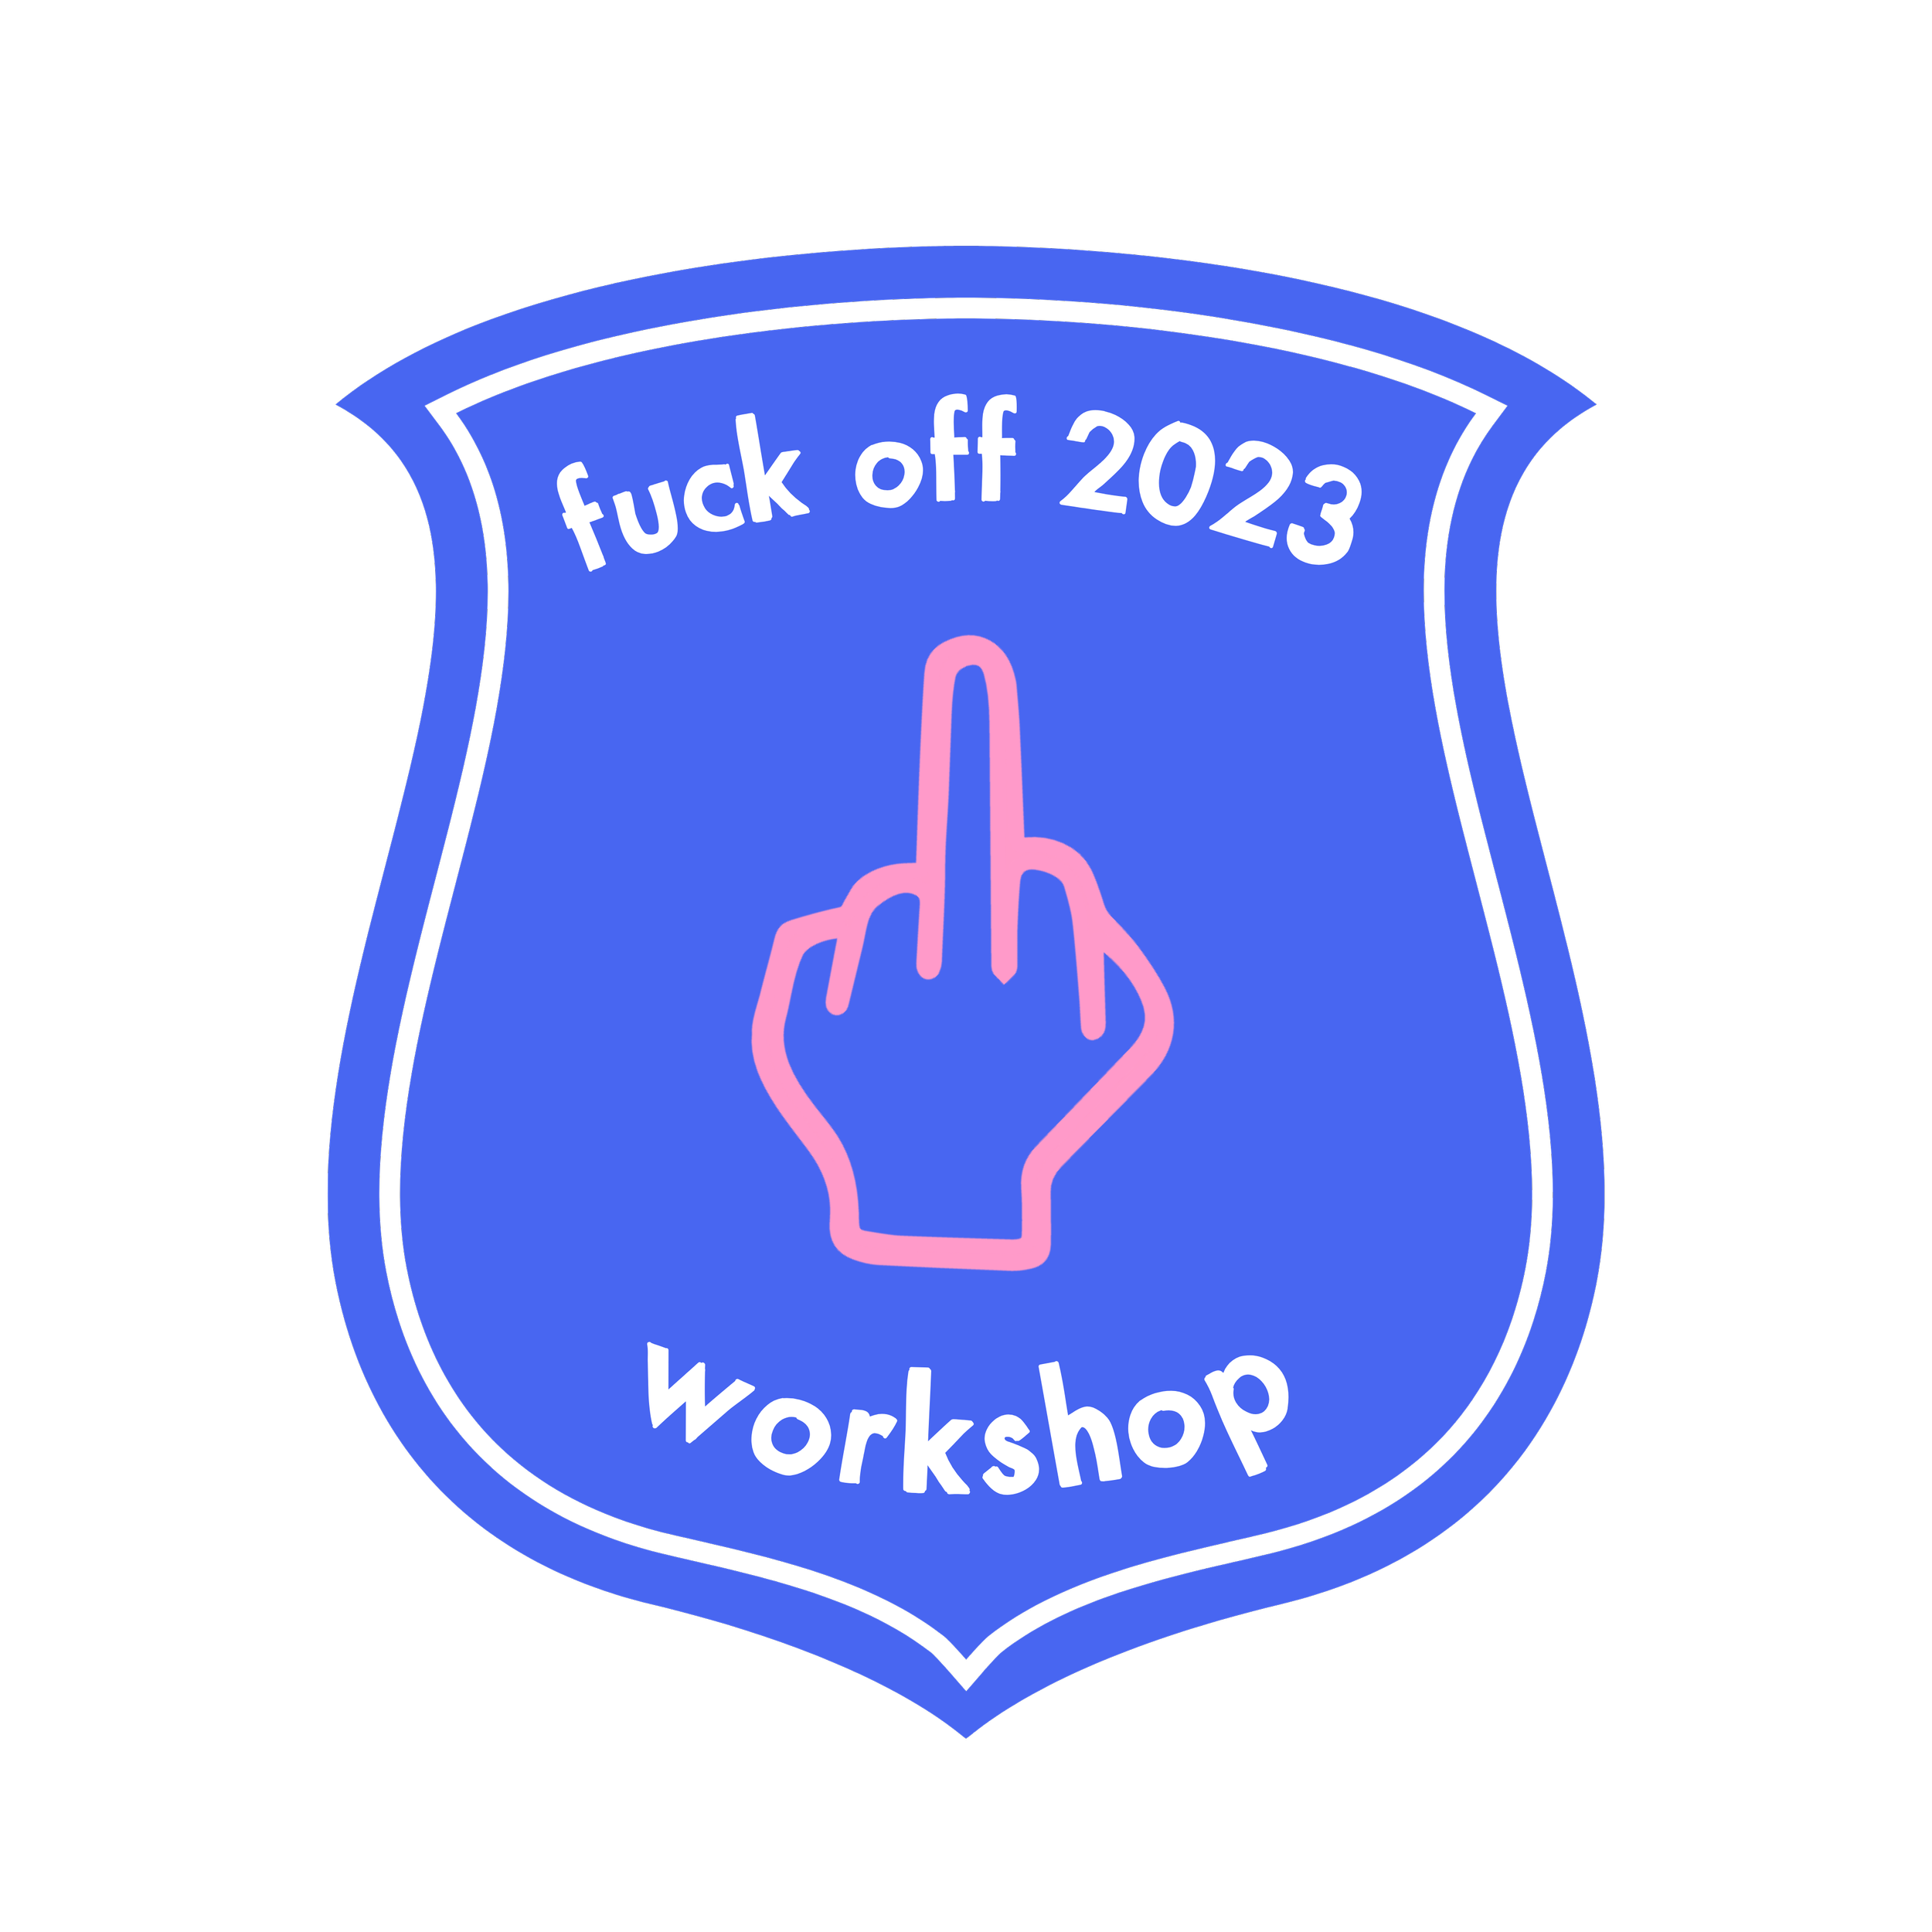 FUCK OFF 2023 WORKSHOP.png